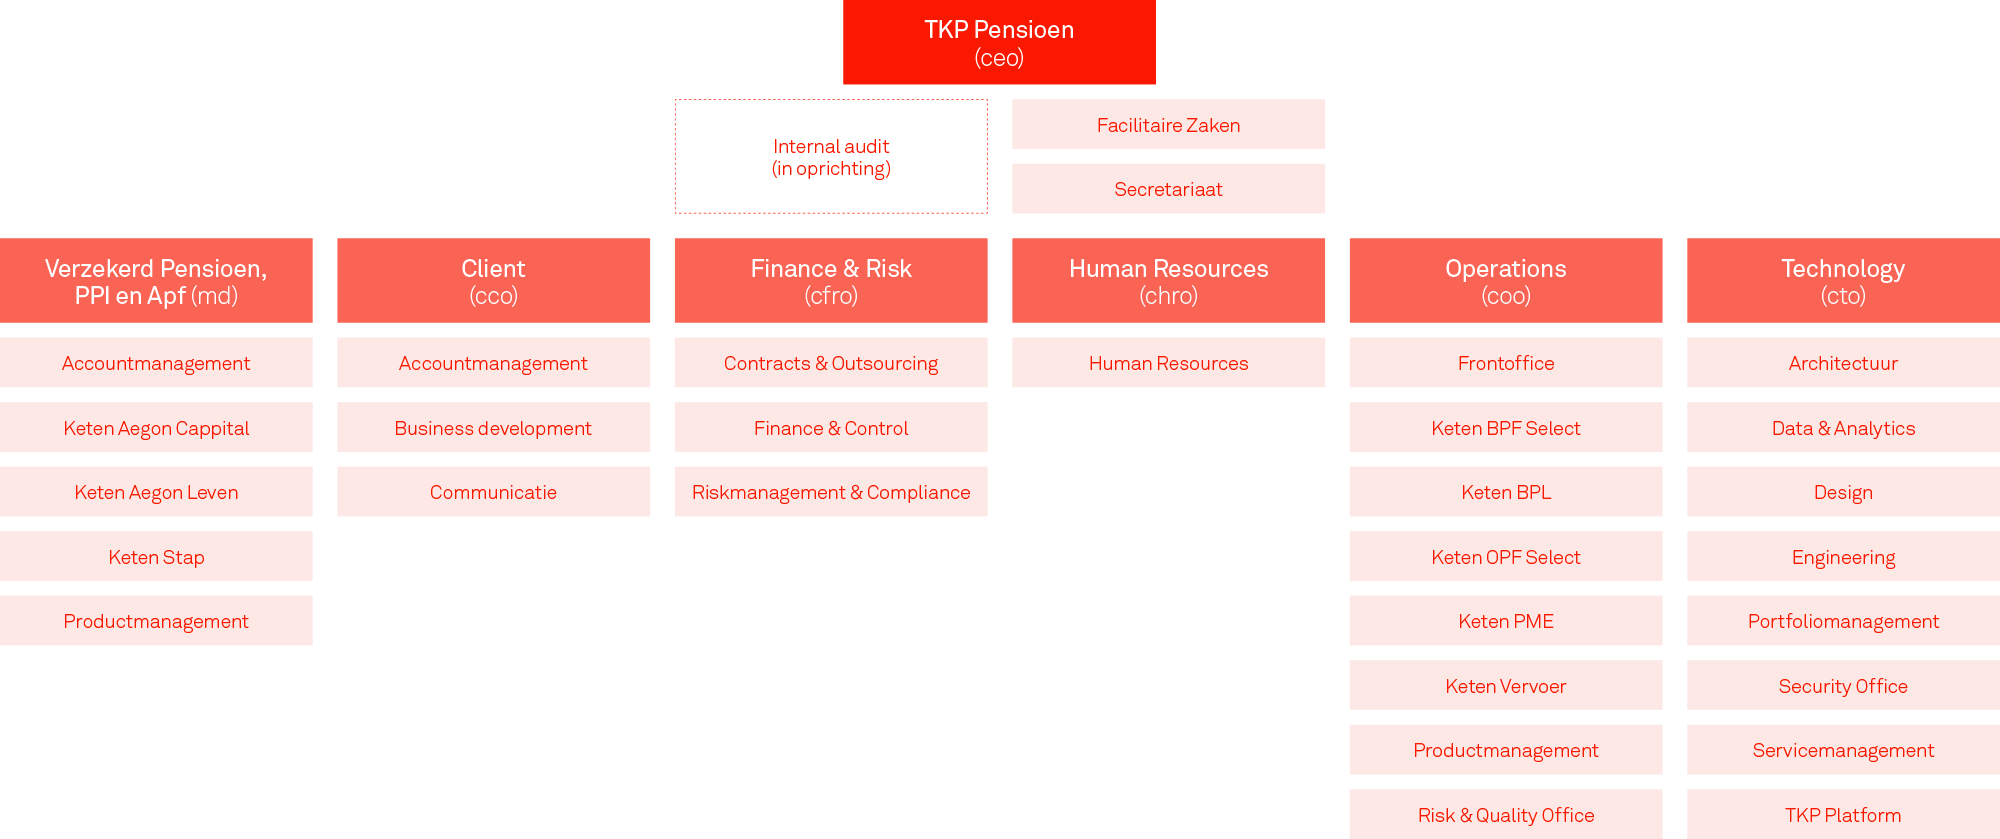 Organogram TKP (1 april 2022)